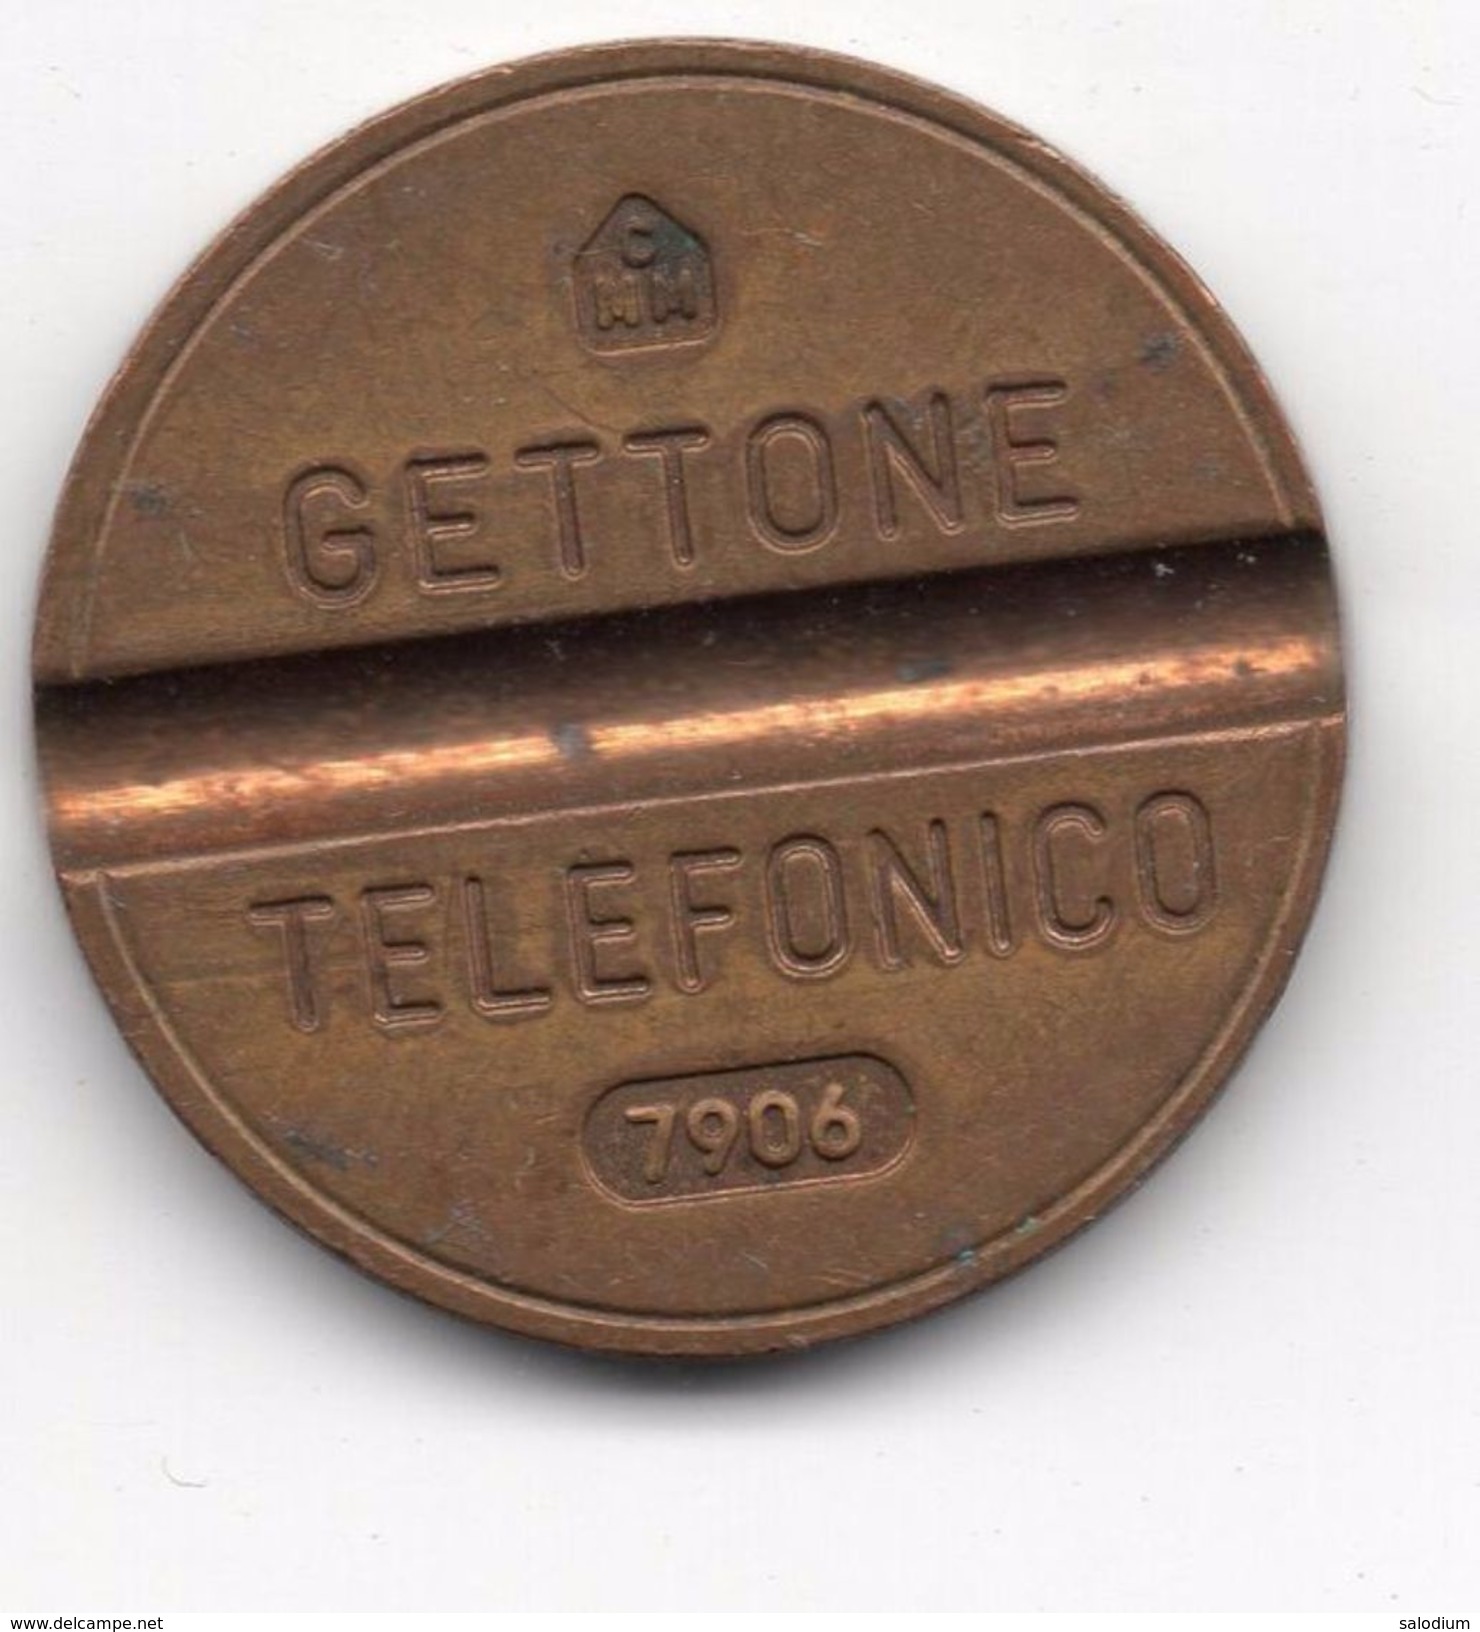 Gettone Telefonico 7906 Token Telephone - (Id-639) - Professionnels/De Société